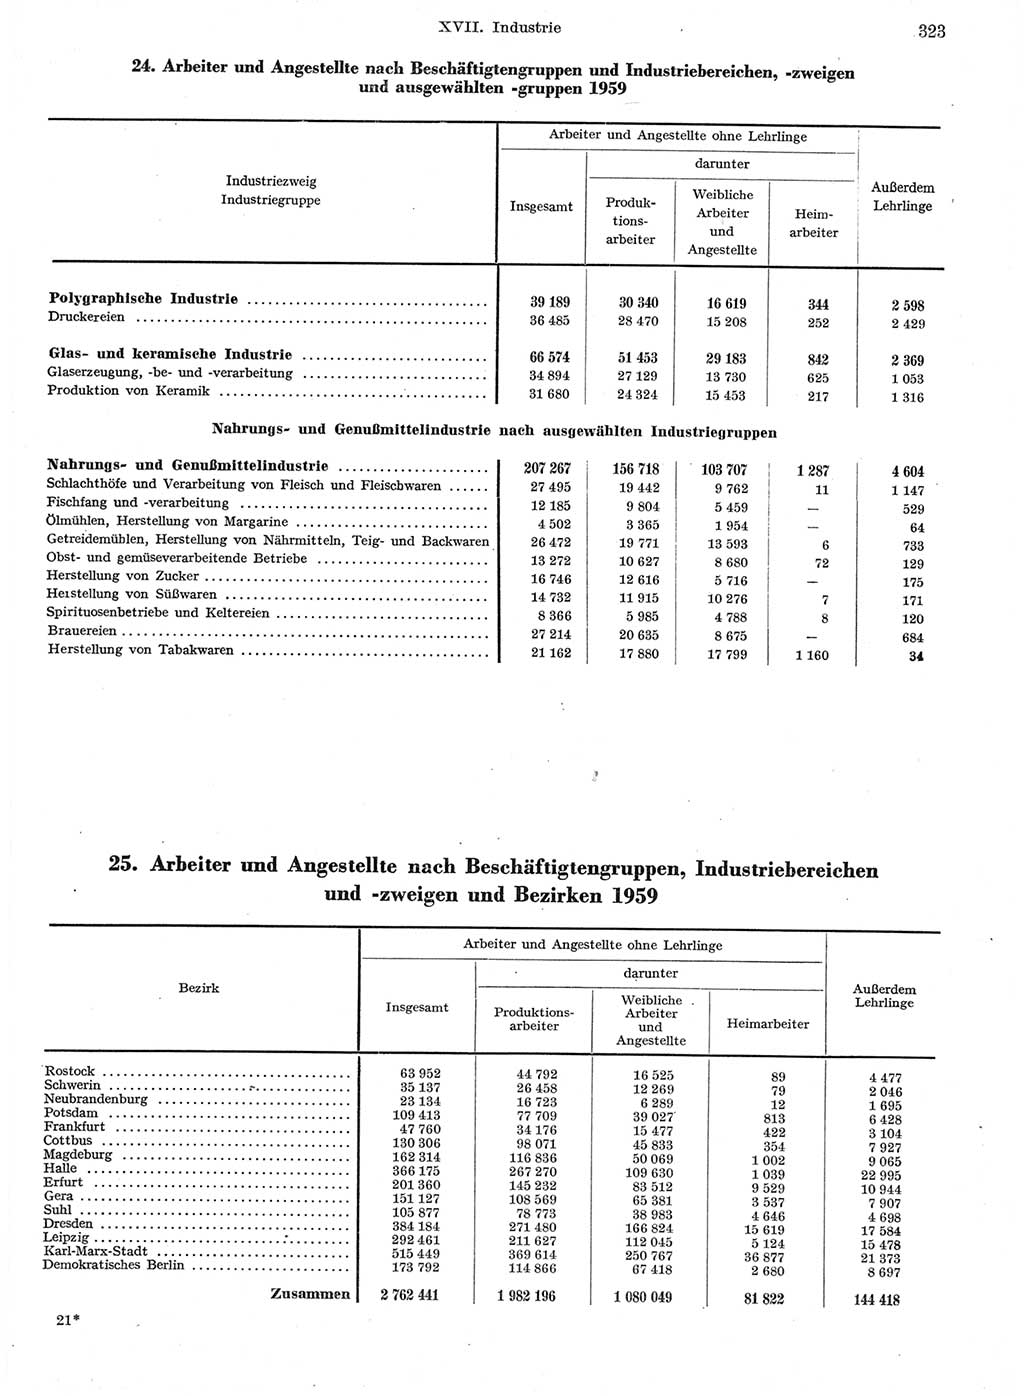 Statistisches Jahrbuch der Deutschen Demokratischen Republik (DDR) 1959, Seite 323 (Stat. Jb. DDR 1959, S. 323)